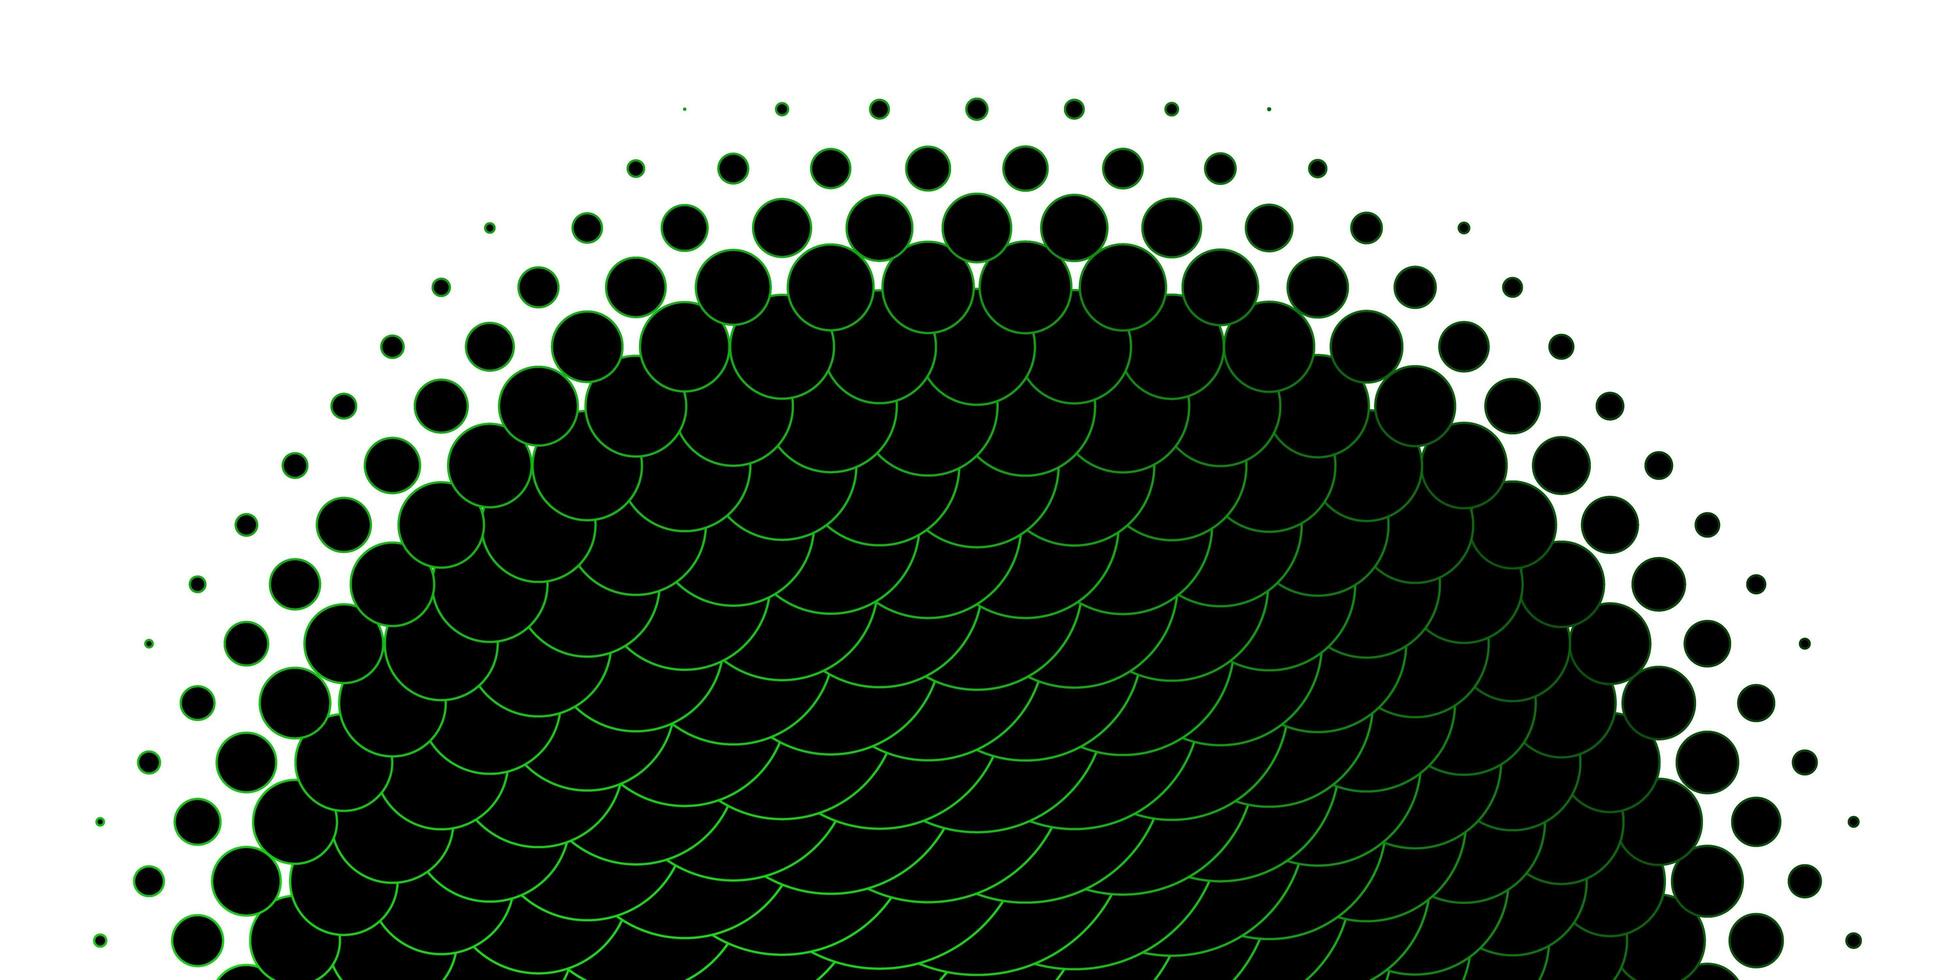 sfondo vettoriale verde chiaro con puntini disegno decorativo astratto in stile sfumato con motivo a bolle per siti web